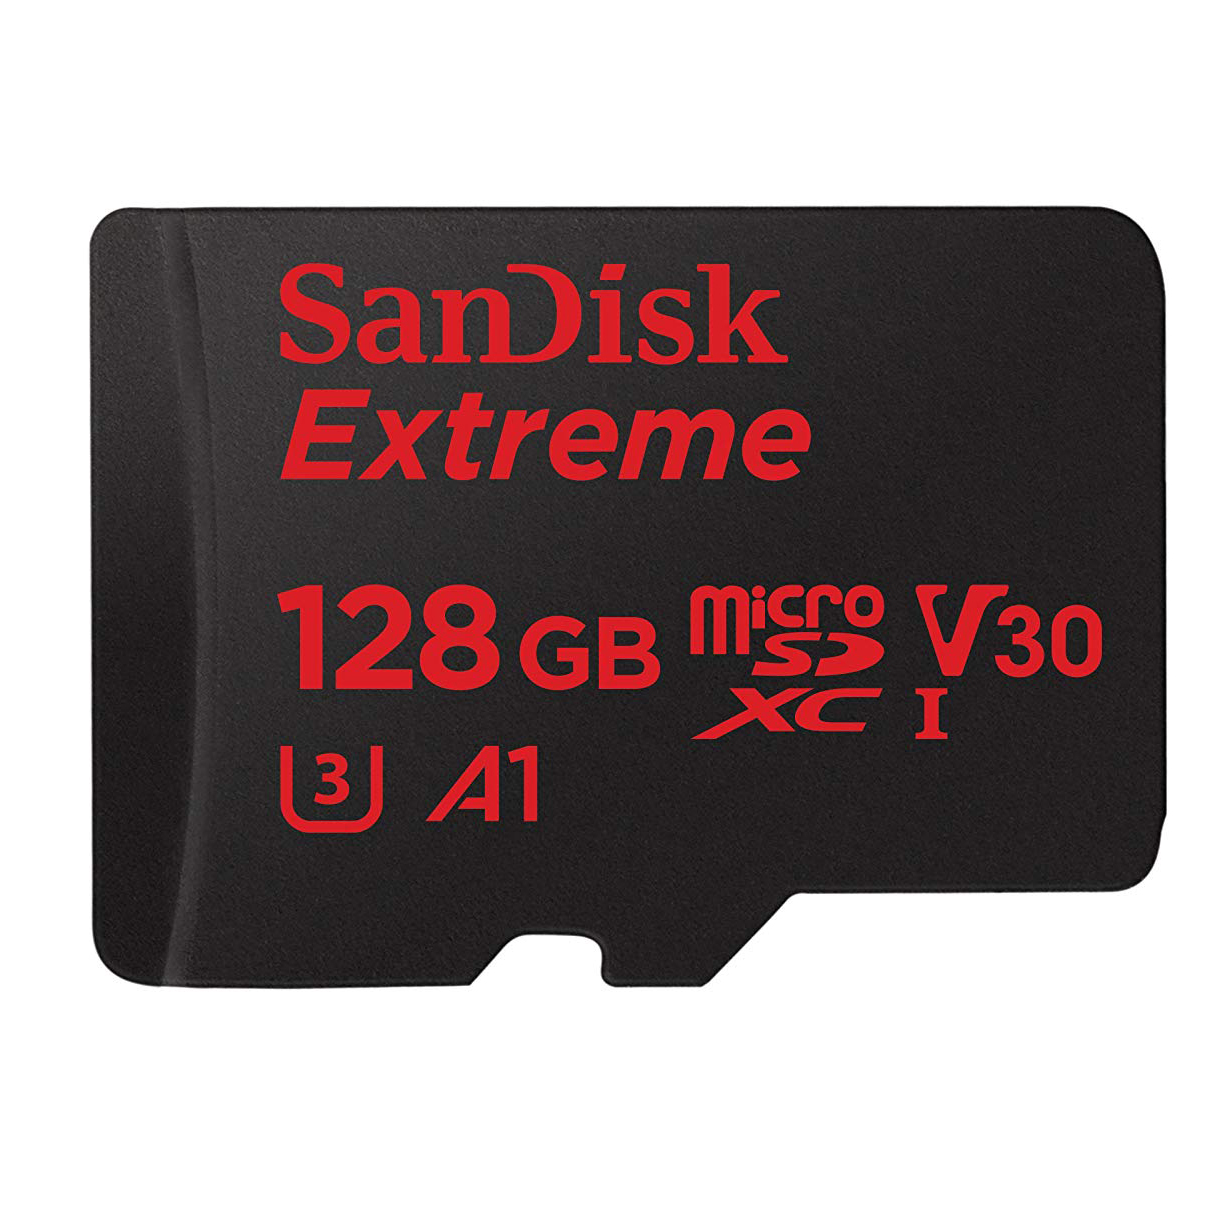 کارت حافظه سندیسک مدل Extreme microSD UHS-I Card کلاس 10 سرعت 98MBps ظرفیت 128 گیگابایت به همراه آداپتور SD